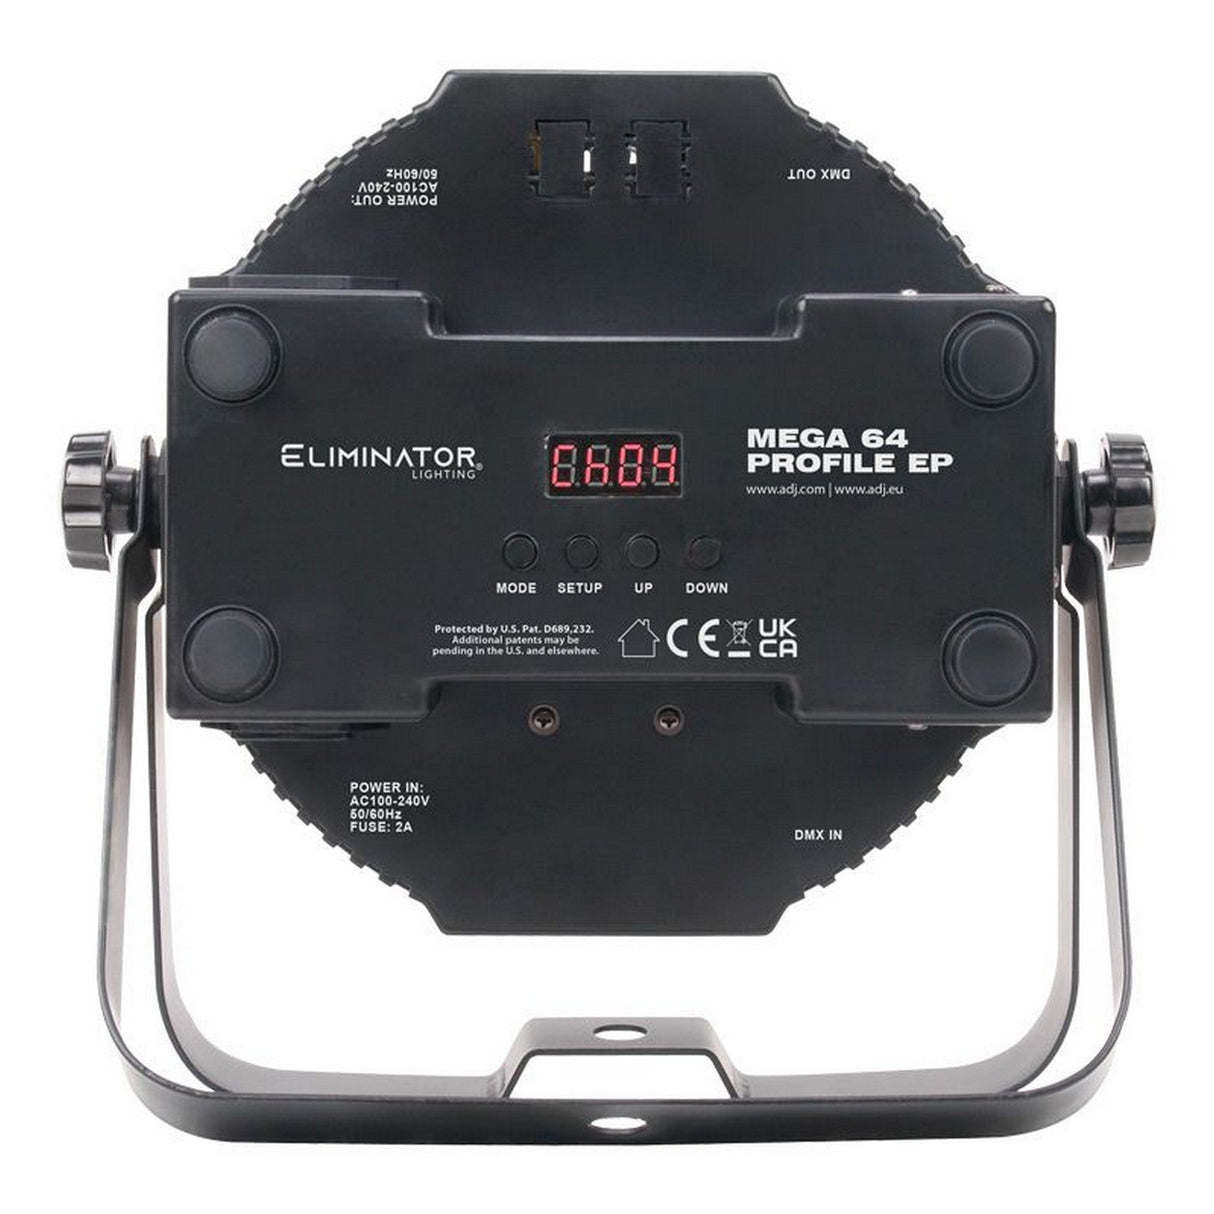 Eliminator Lighting Mega 64 Profile EP LED Par with Wired Digital Communication Network